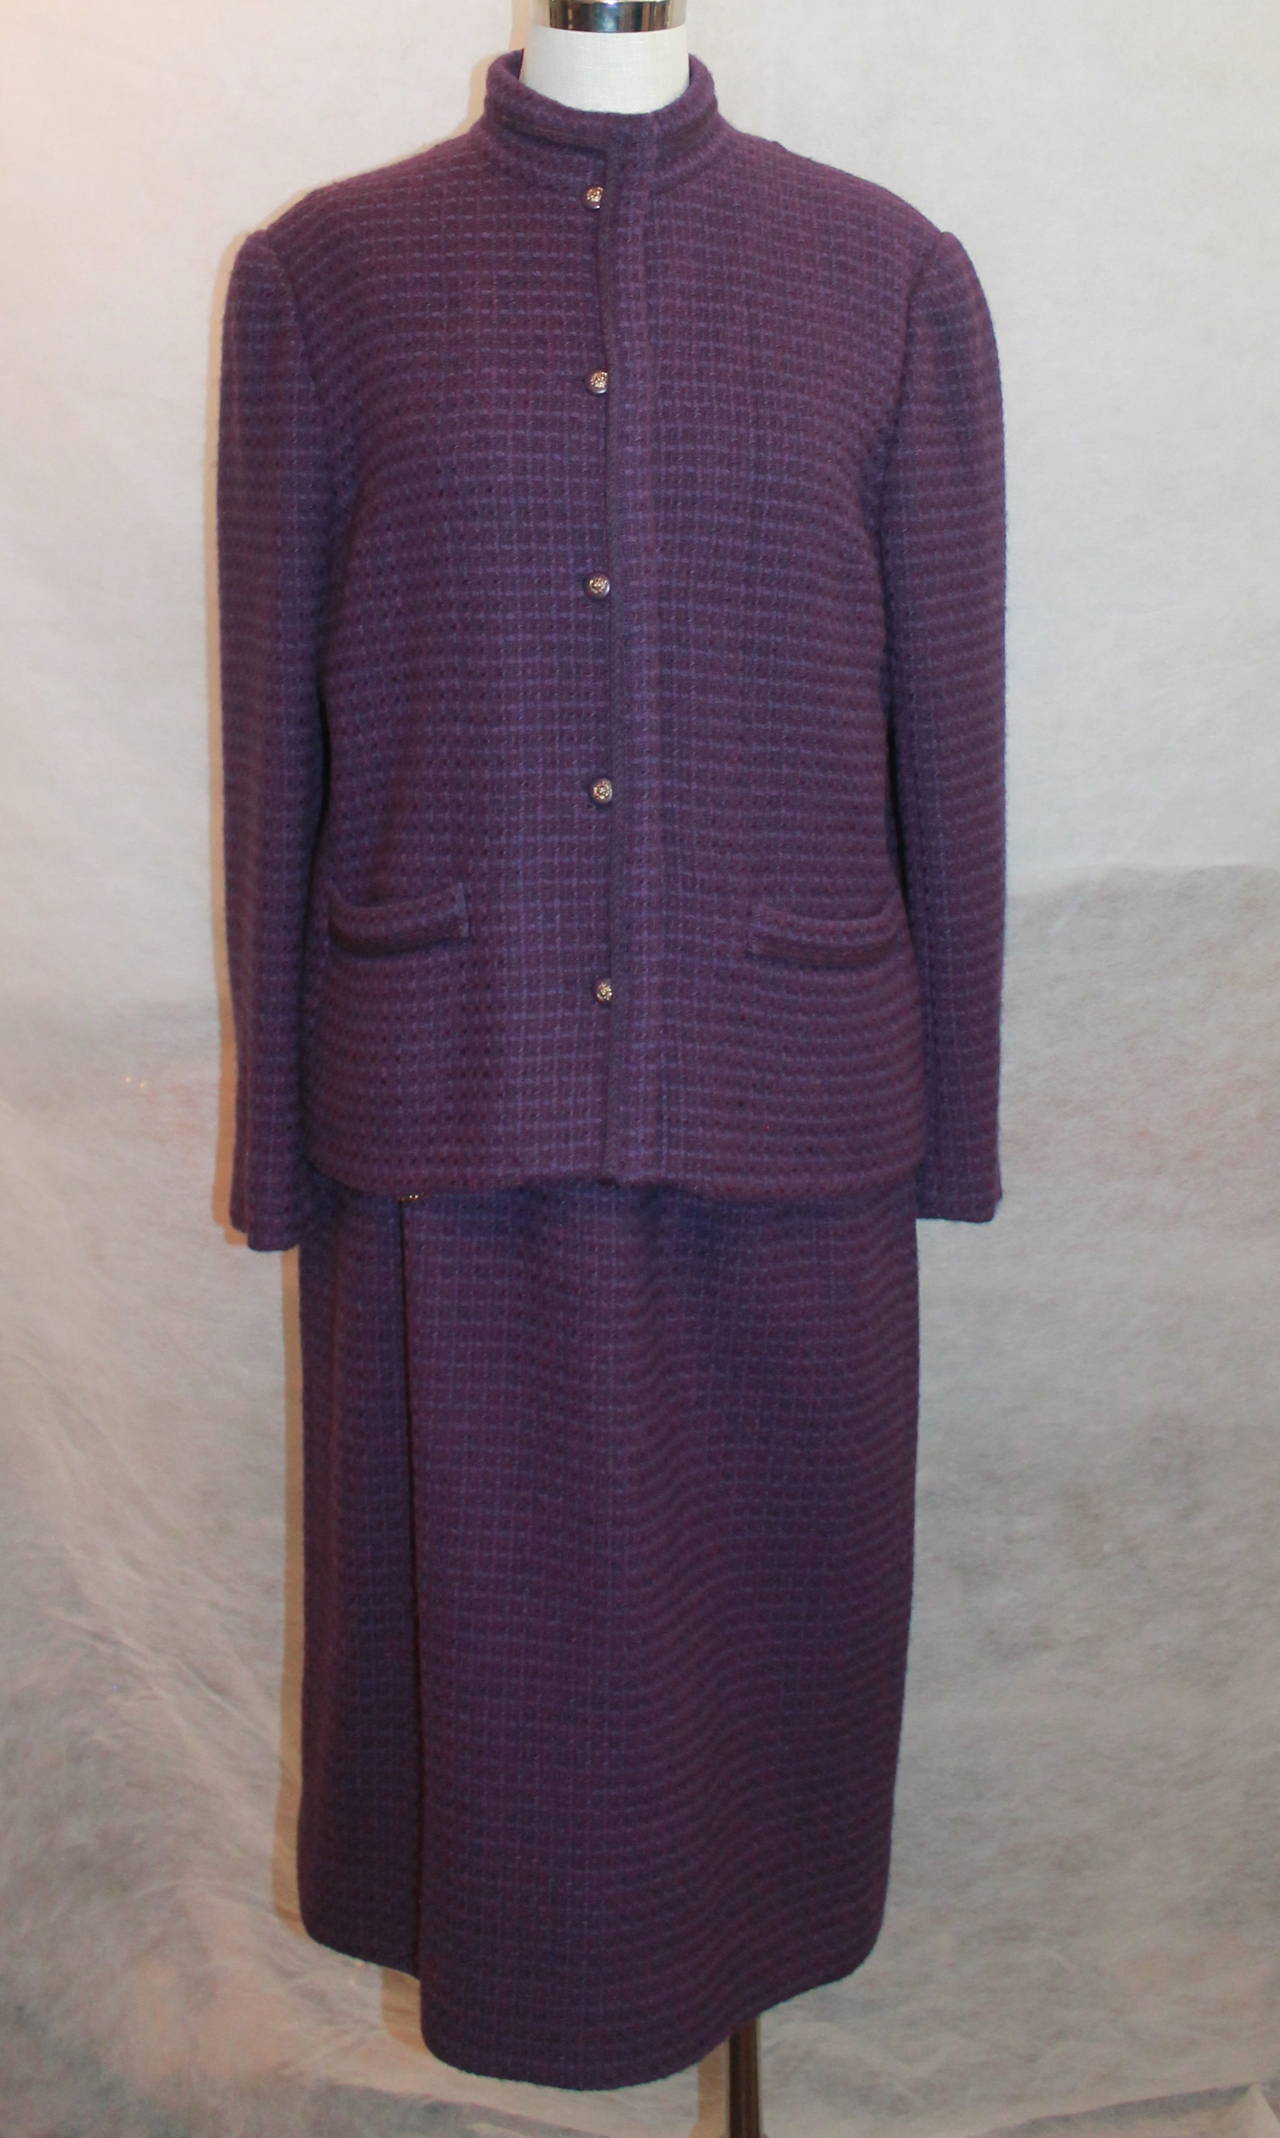 Chanel 1970's Vintage Tweed Purple Wool Skirt Suit - 44. Ce costume est en très bon état vintage avec une usure très mineure. Il est doté de deux poches sur le devant et d'une bordure surélevée de couleur violette. Les boutons portent également